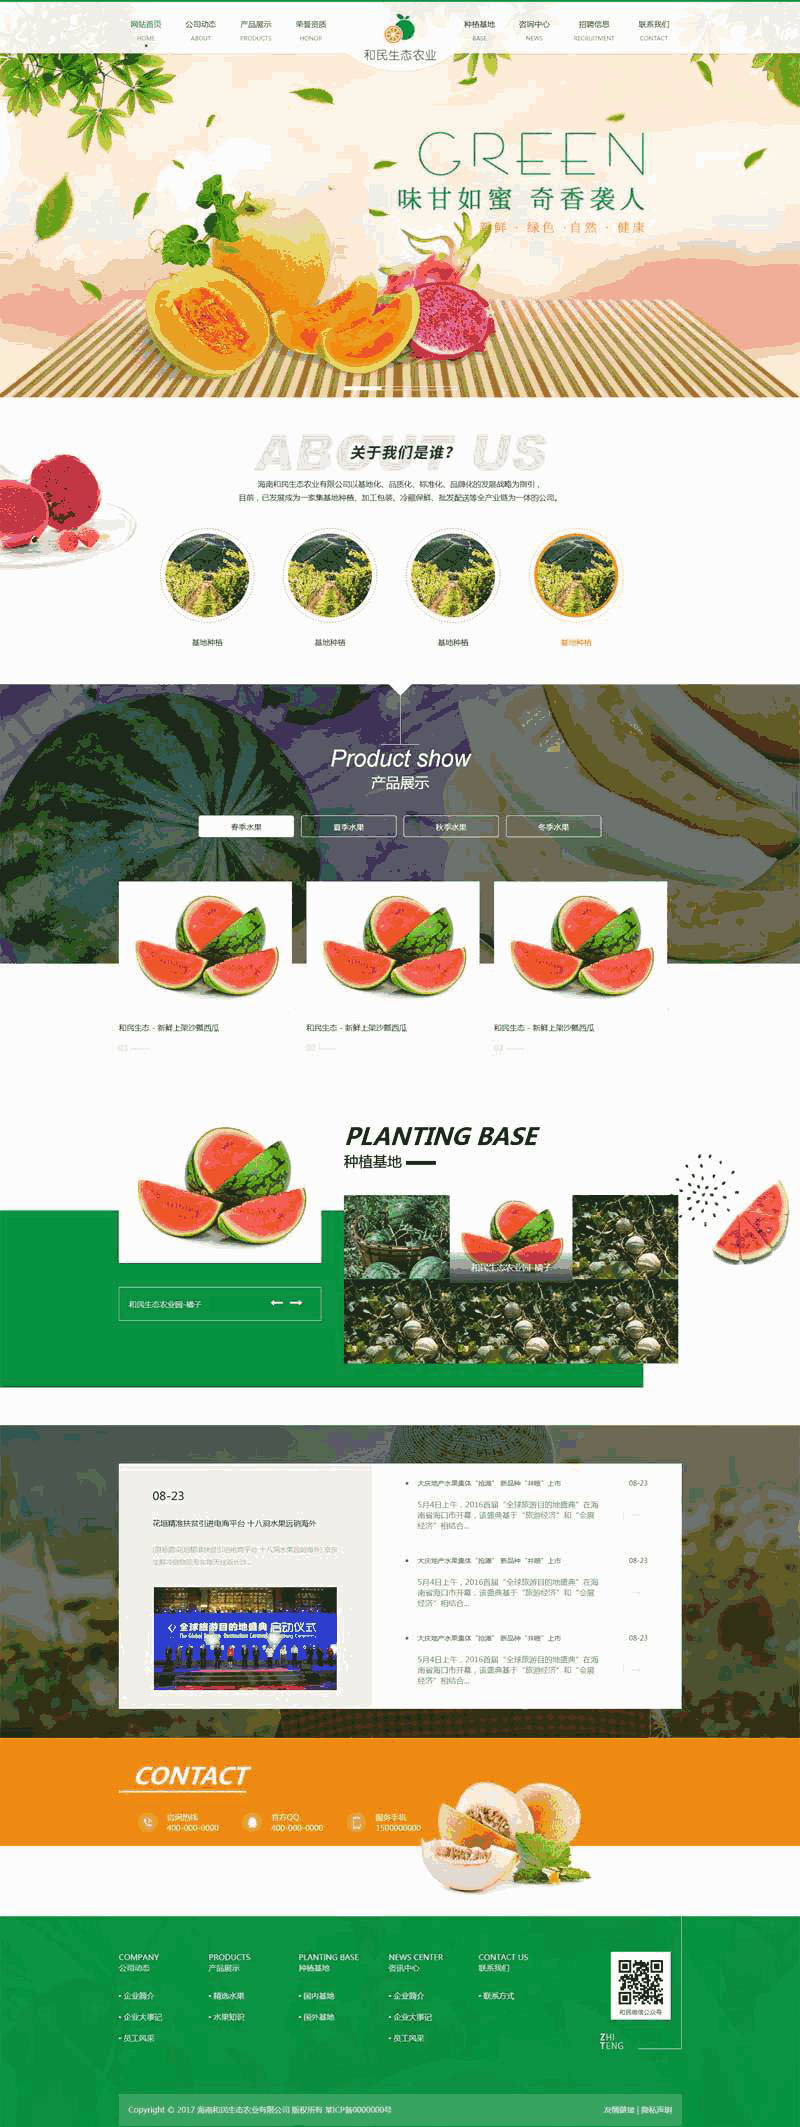 绿色生态农业生态农业水果种植公司Wordpress模板主题